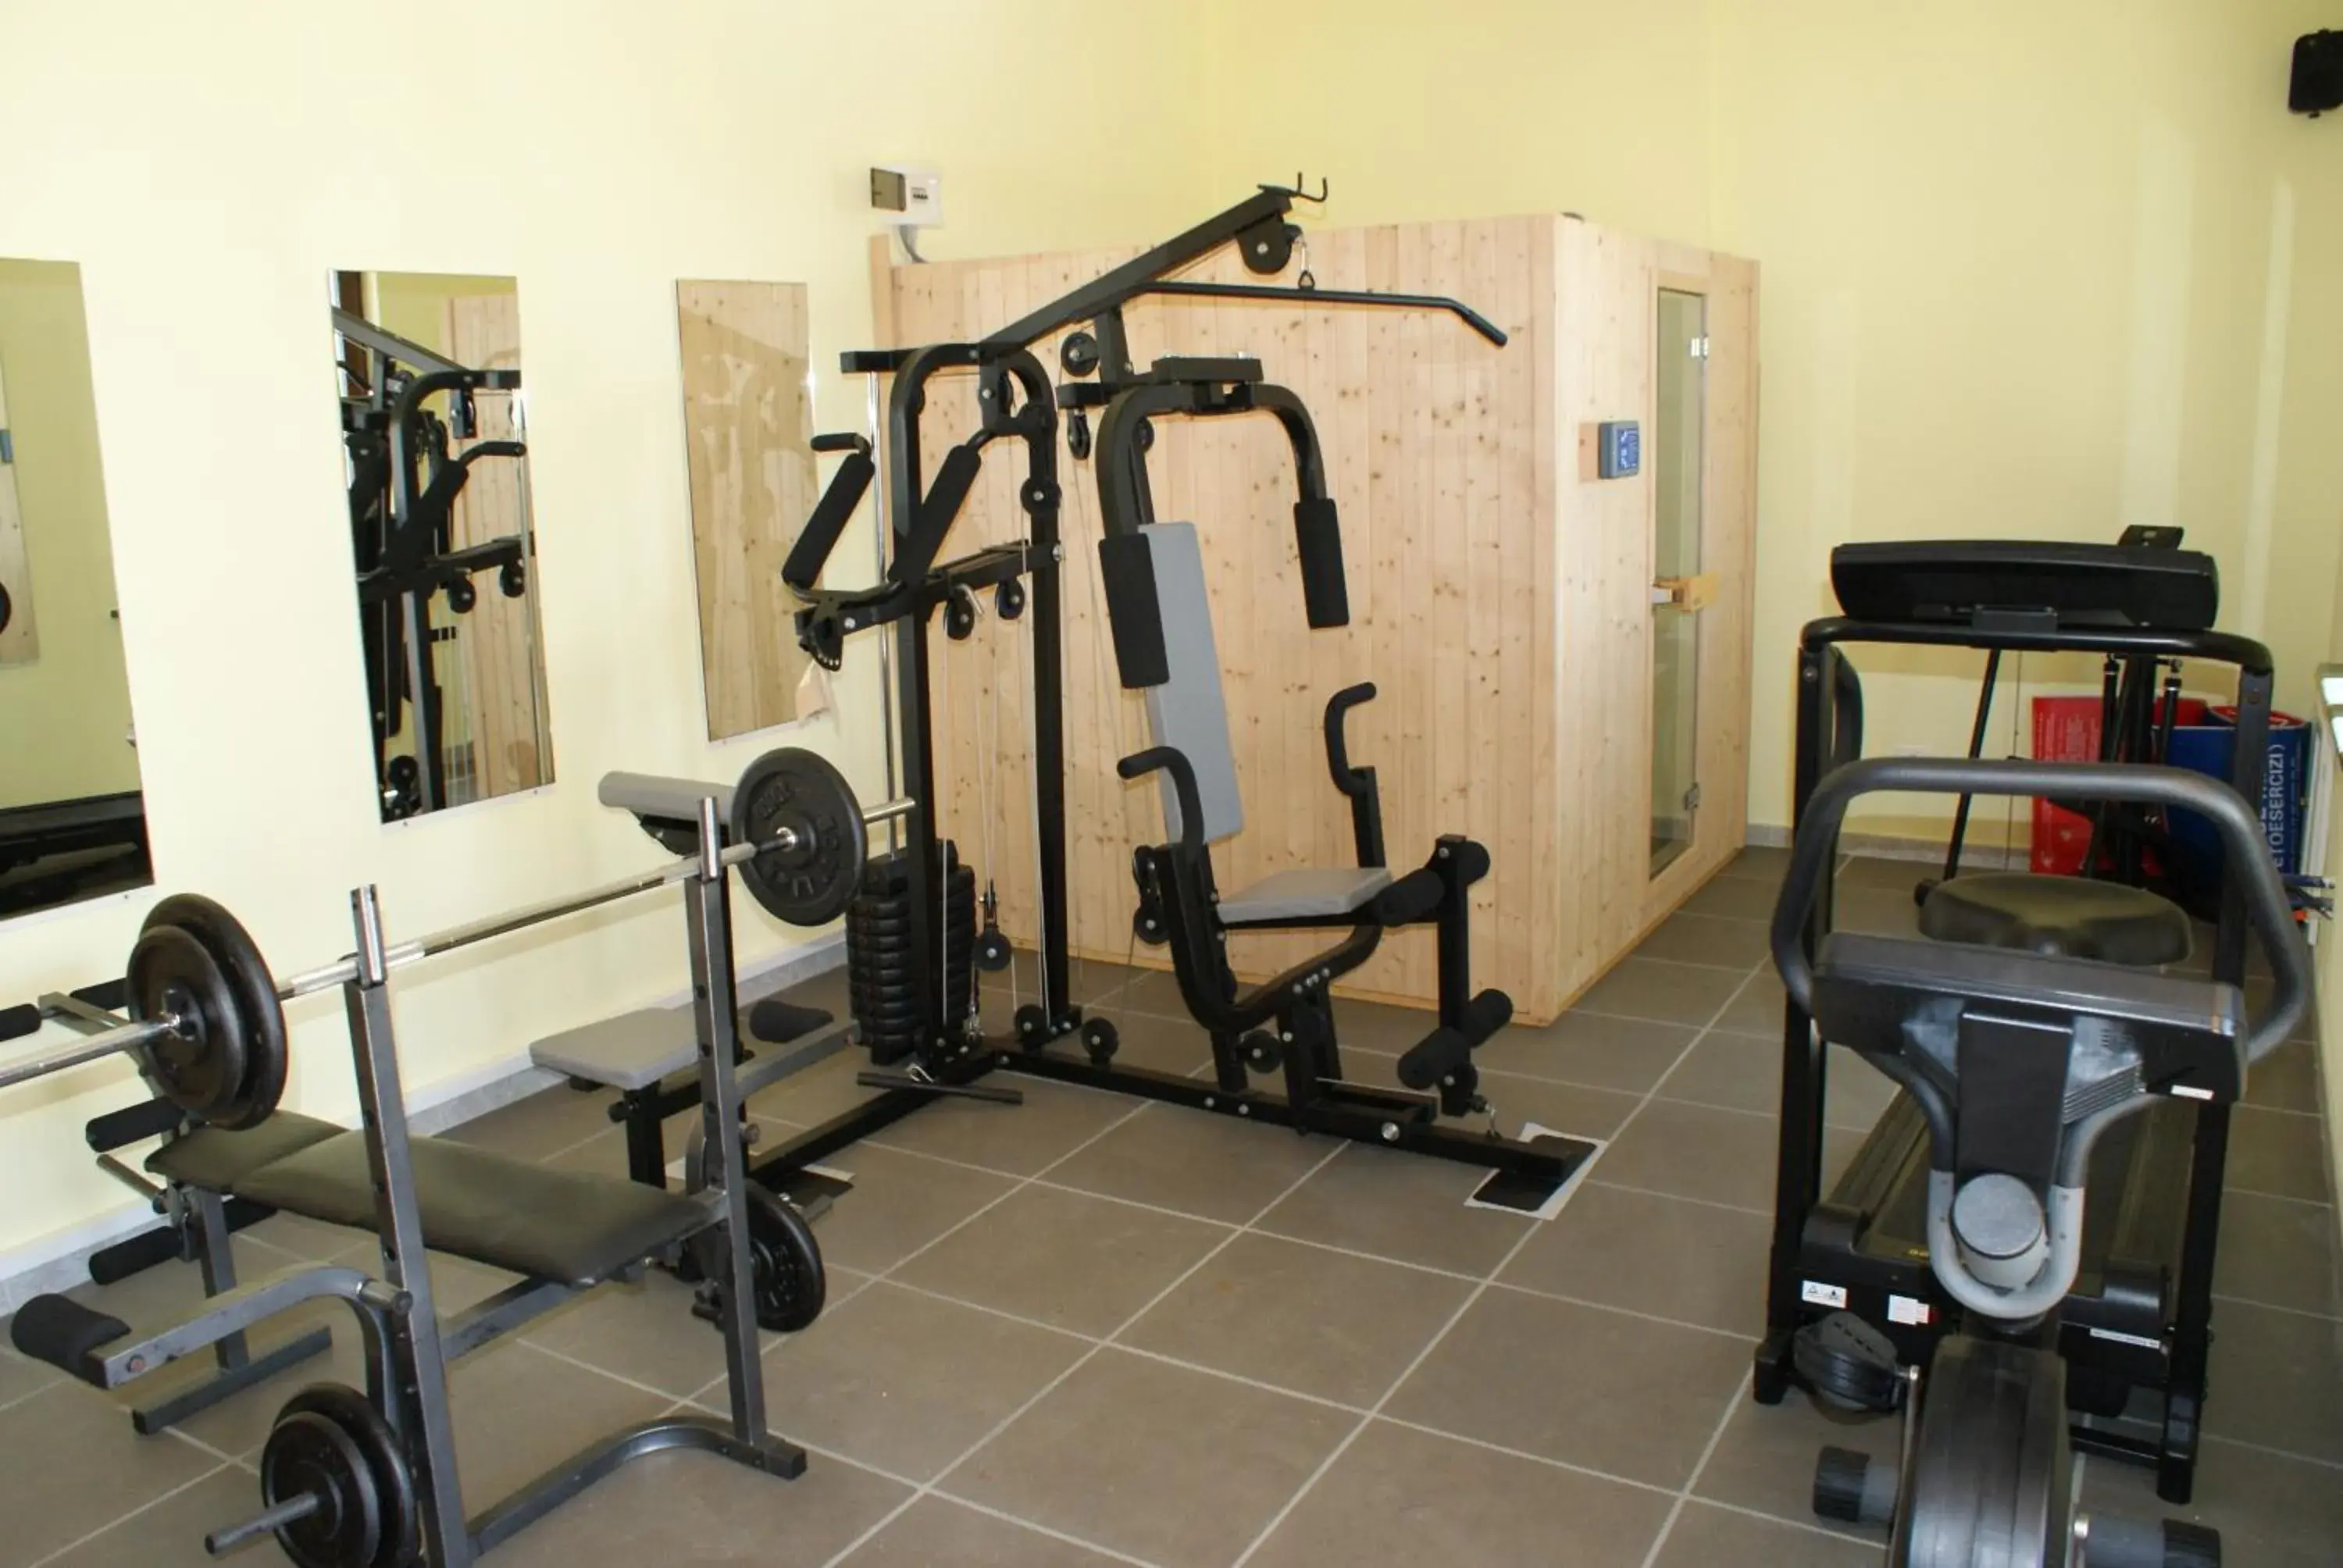 Fitness centre/facilities, Fitness Center/Facilities in Hotel Ristorante Borgo La Tana